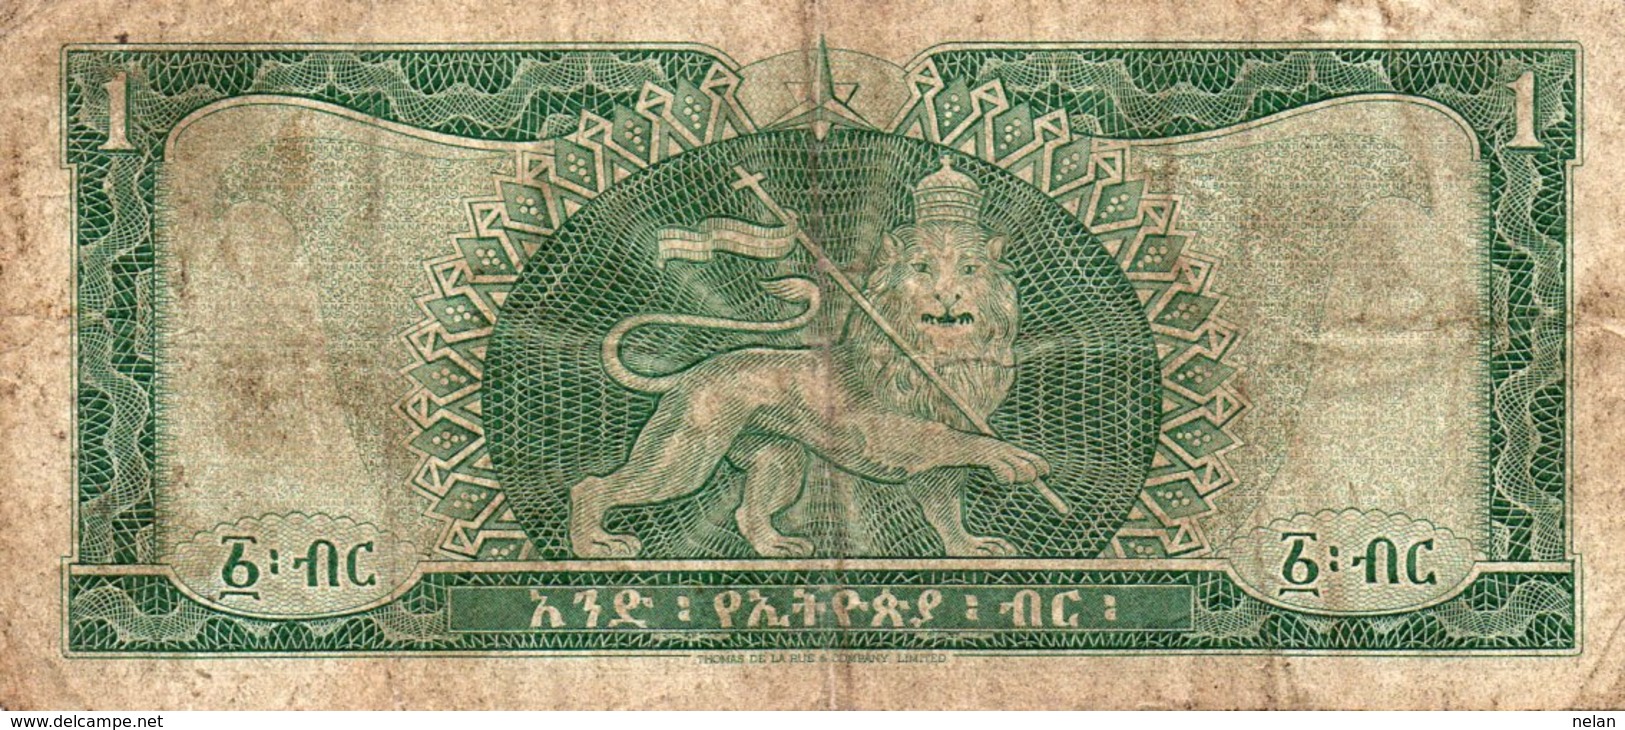 ETHIOPIA 1 DOLLAR 1966 P-25 - Aethiopien